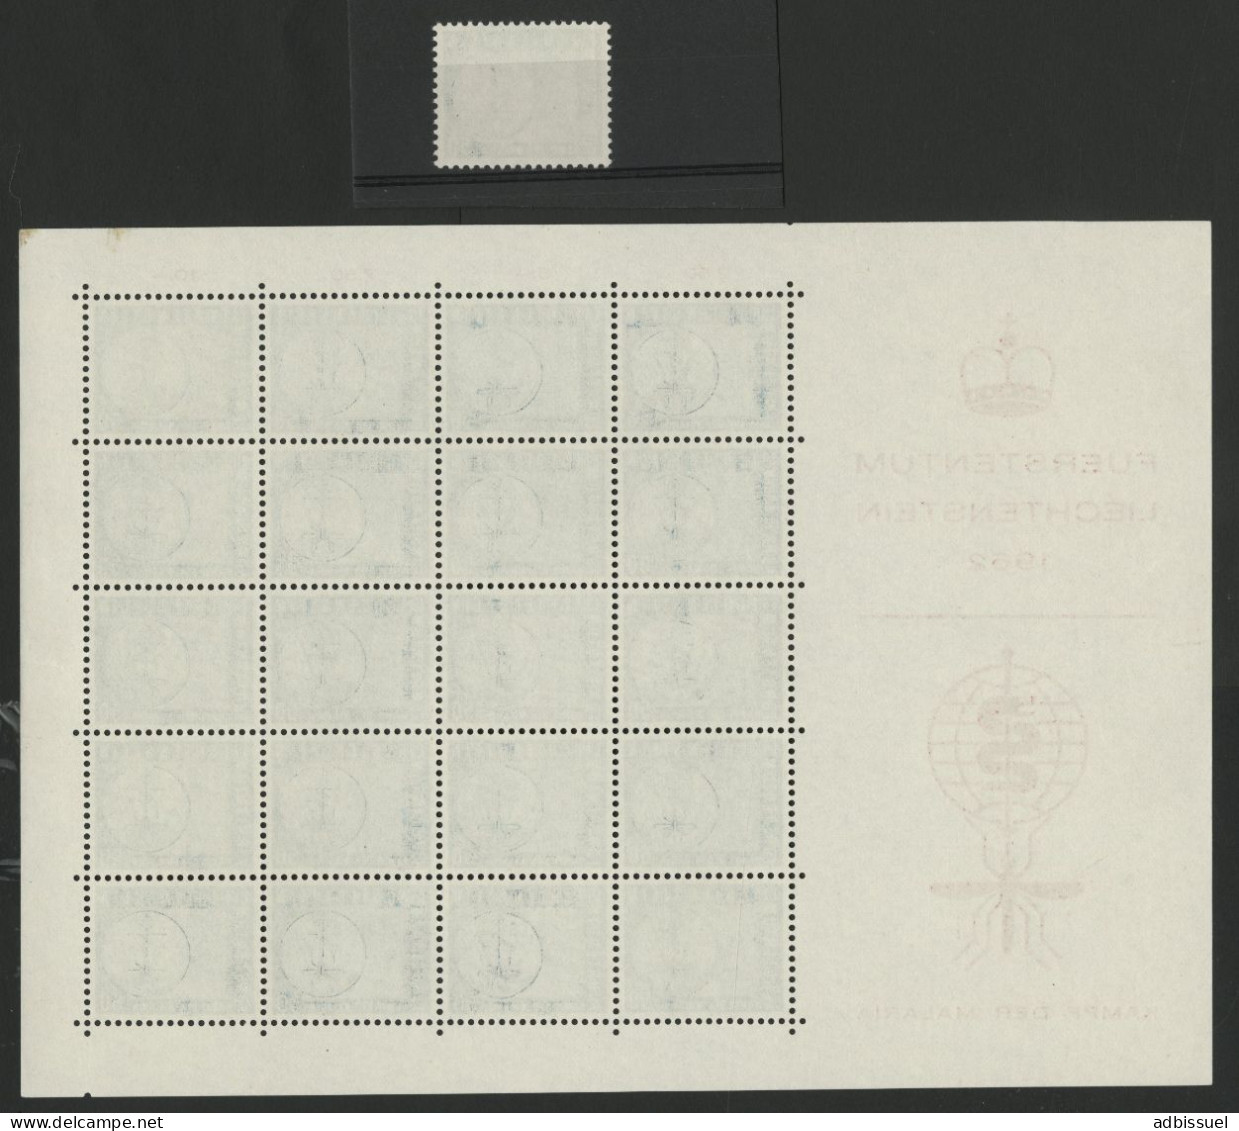 1962 PALUDISME MALARIA  Feuille Complète Neuve ** (MNH) Voir Description - Unused Stamps